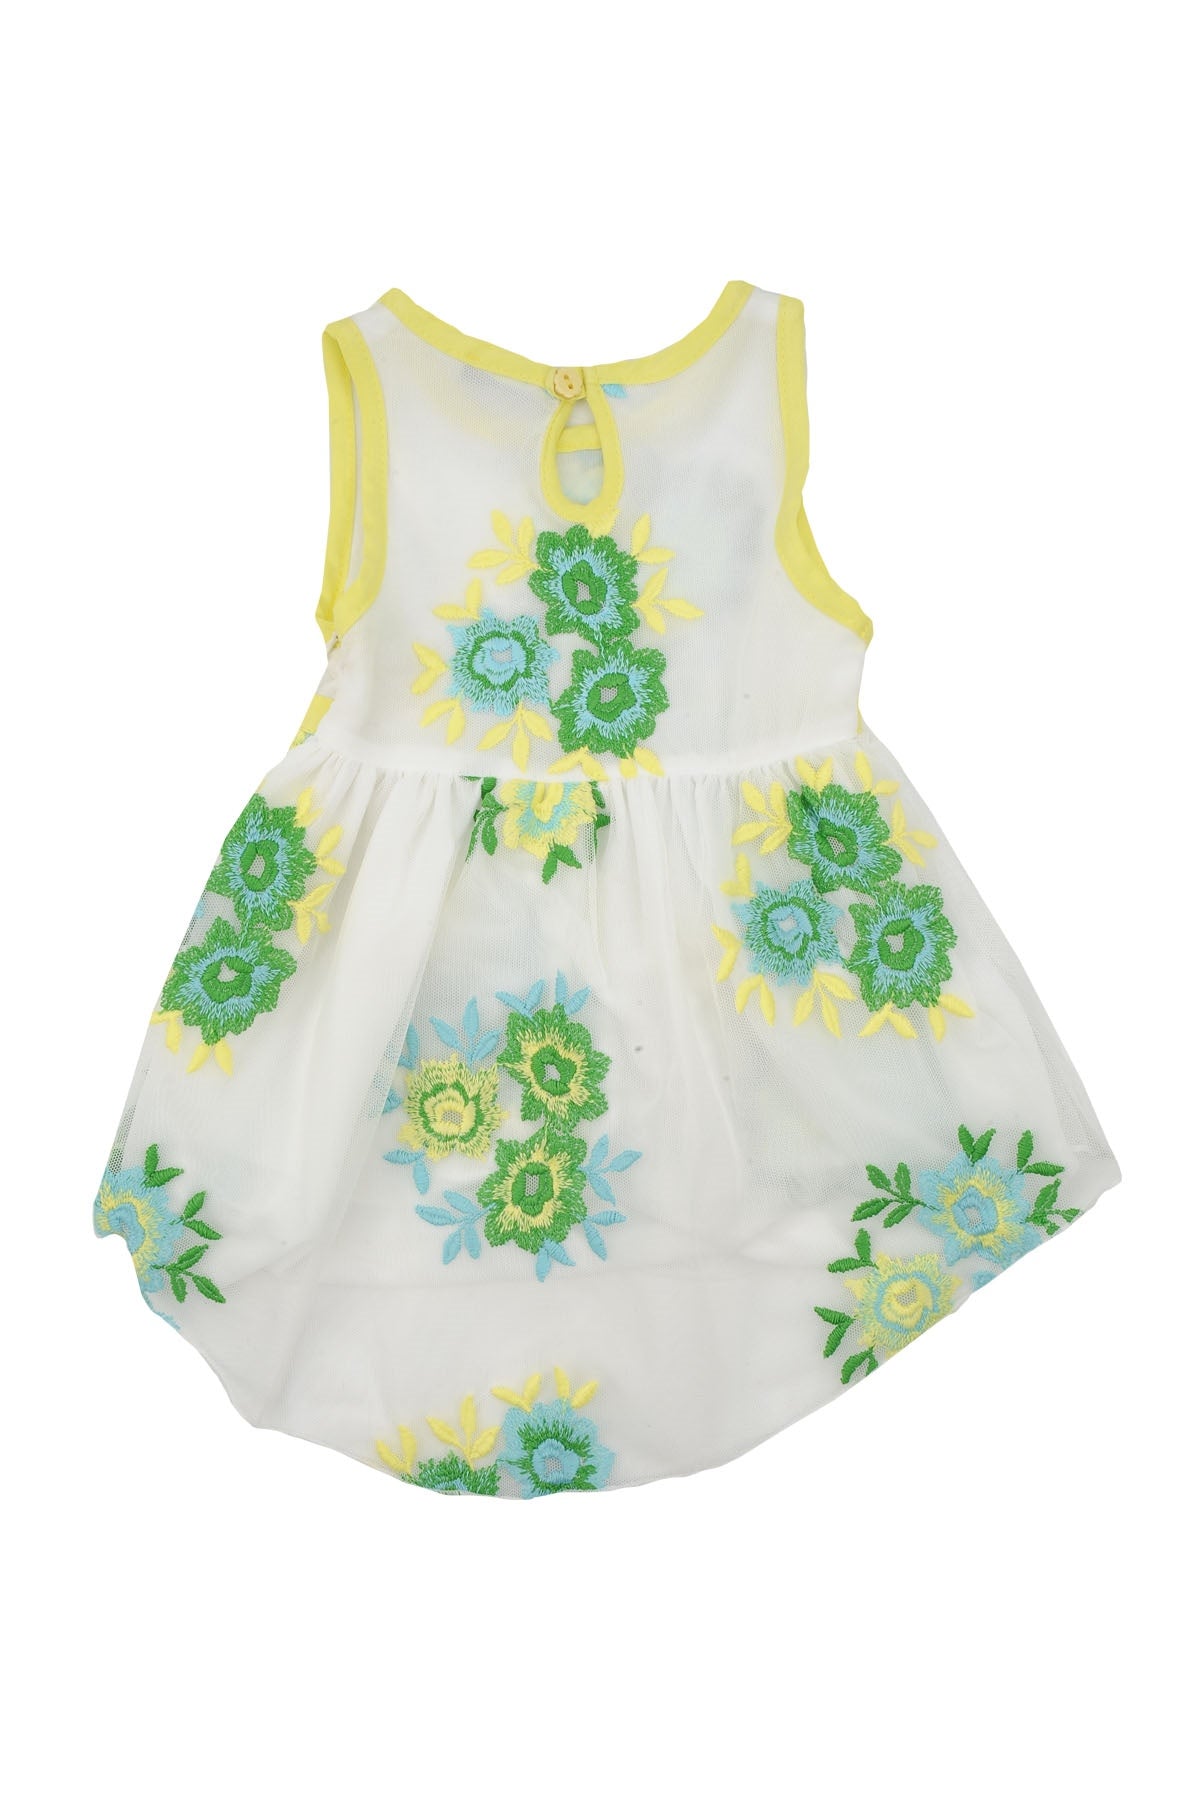 Kız Bebek Sarı Çiçekli Tüllü Elbise (6ay-4yaş)-1